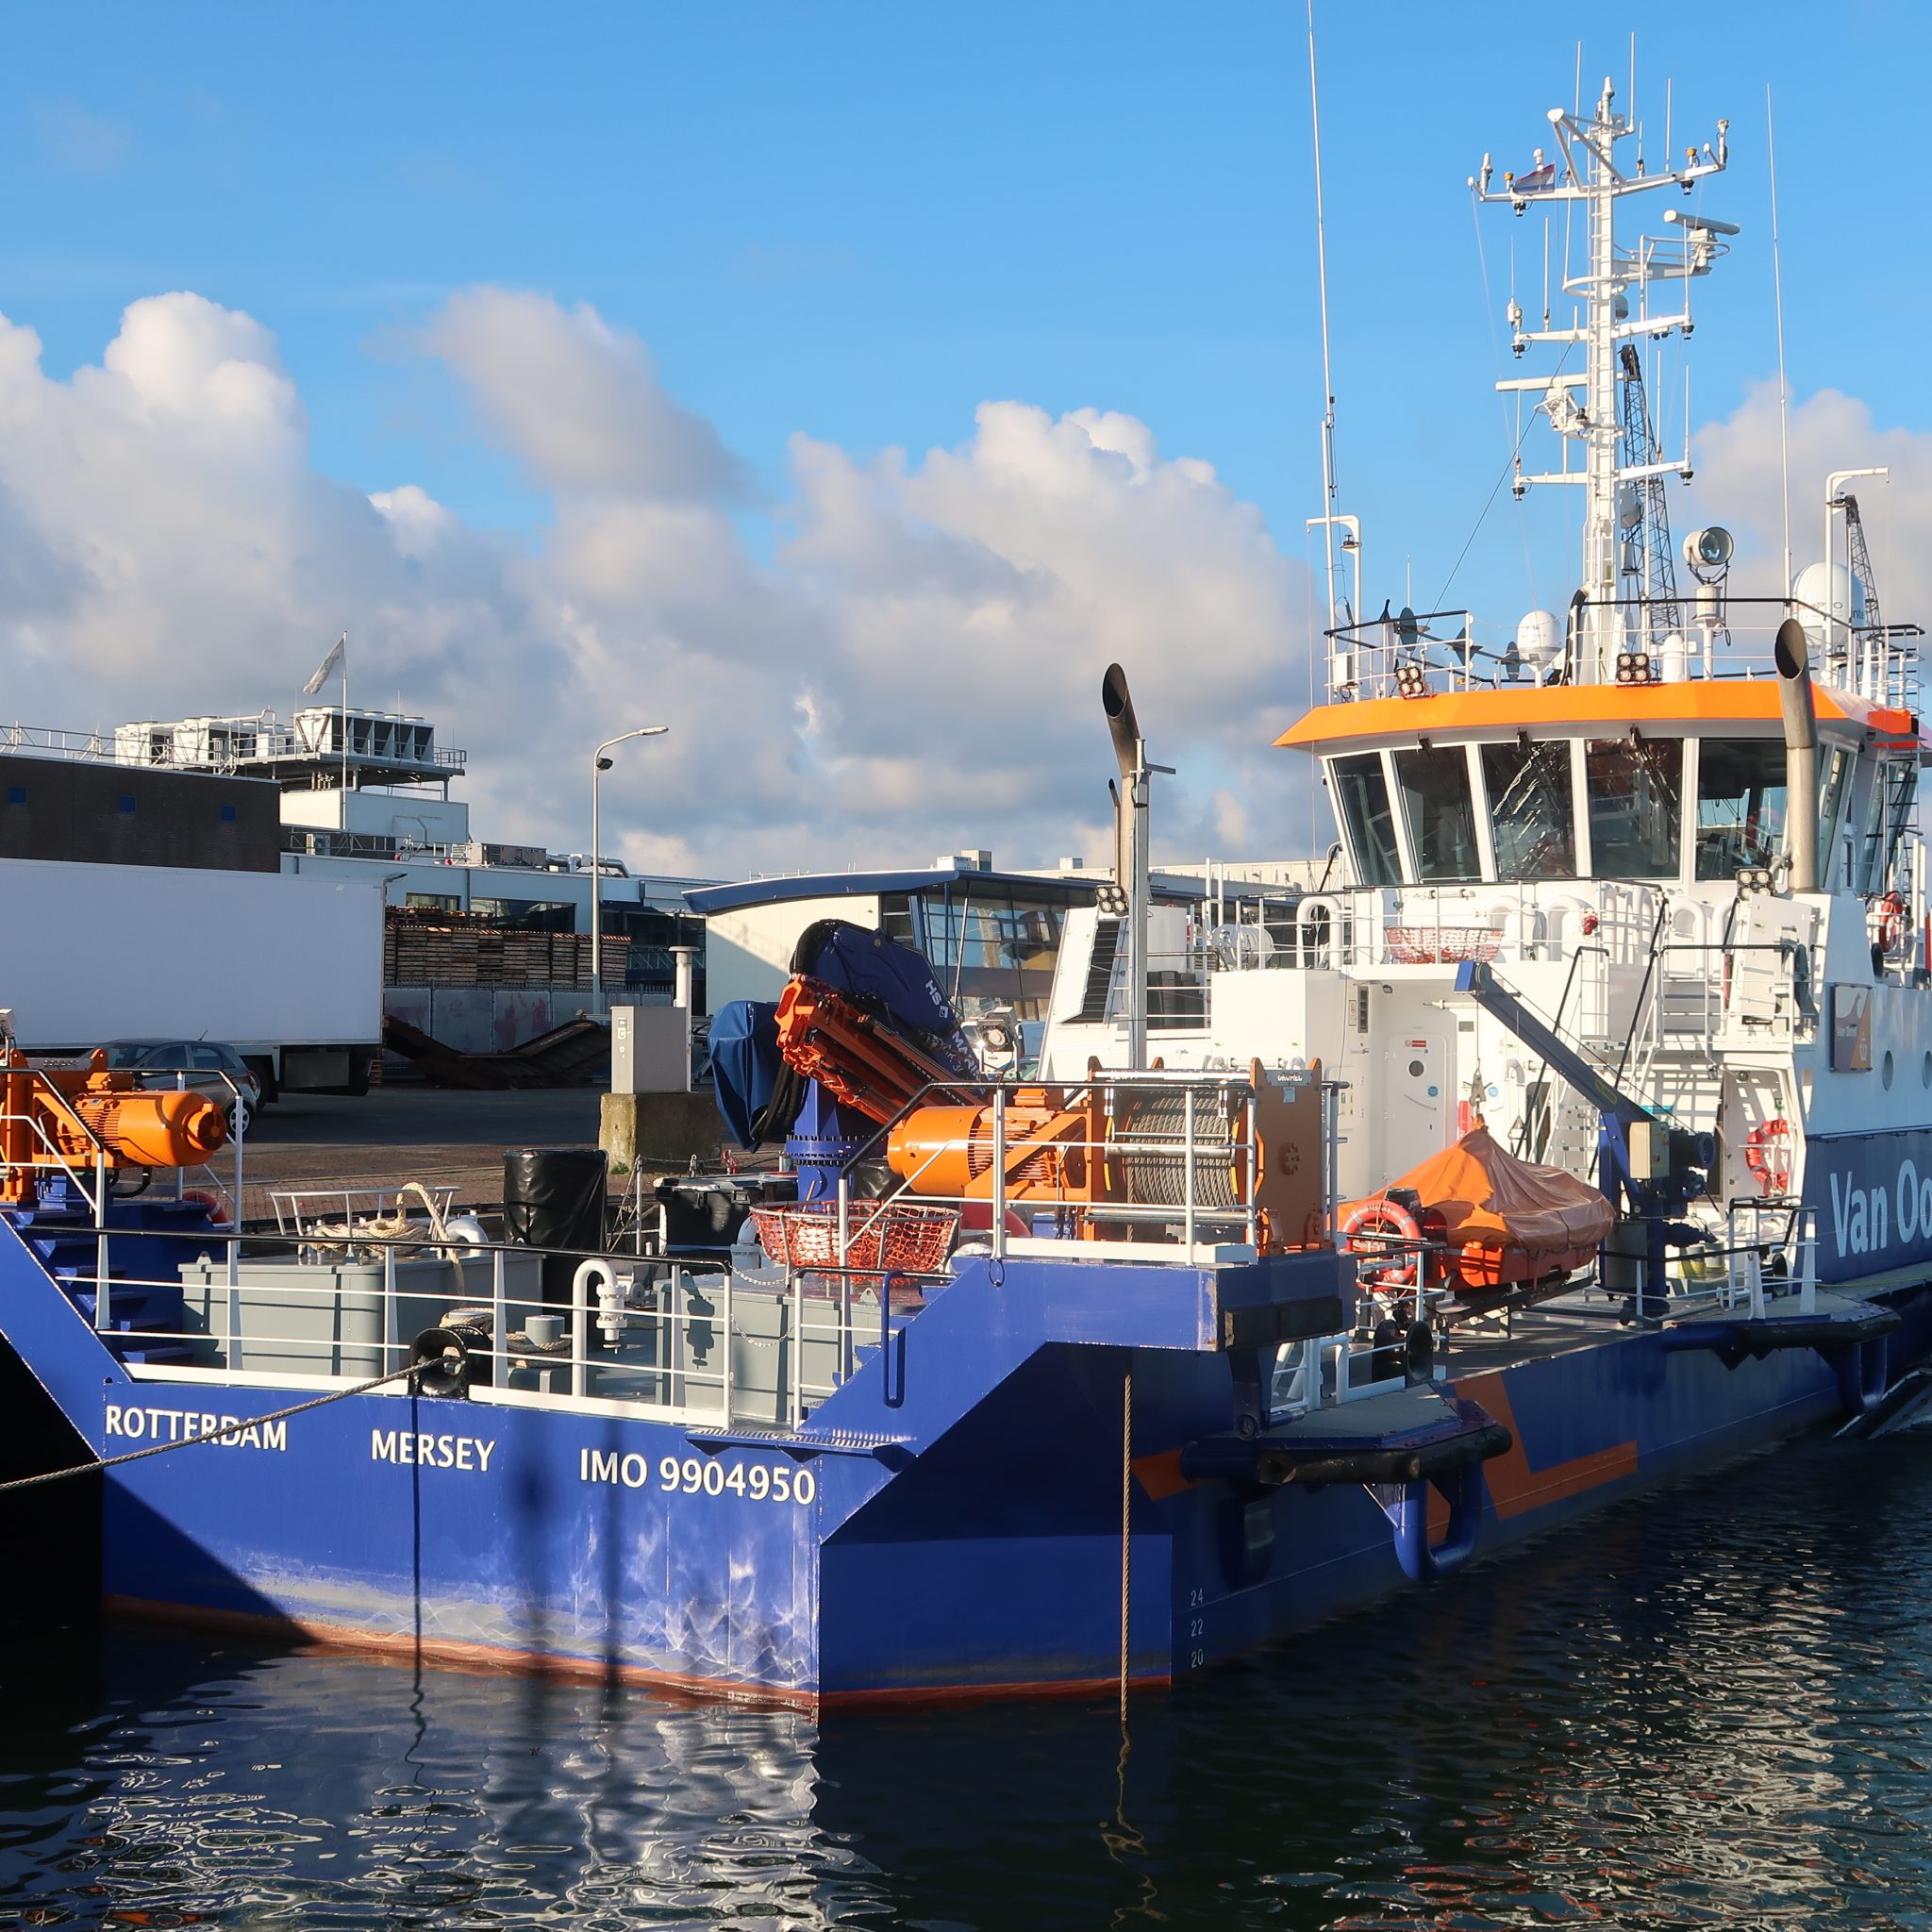 Het 1 jaar oude hybride waterinjectievaartuig Mersey in de haven van Scheveningen. (Foto W.M. den Heijer)